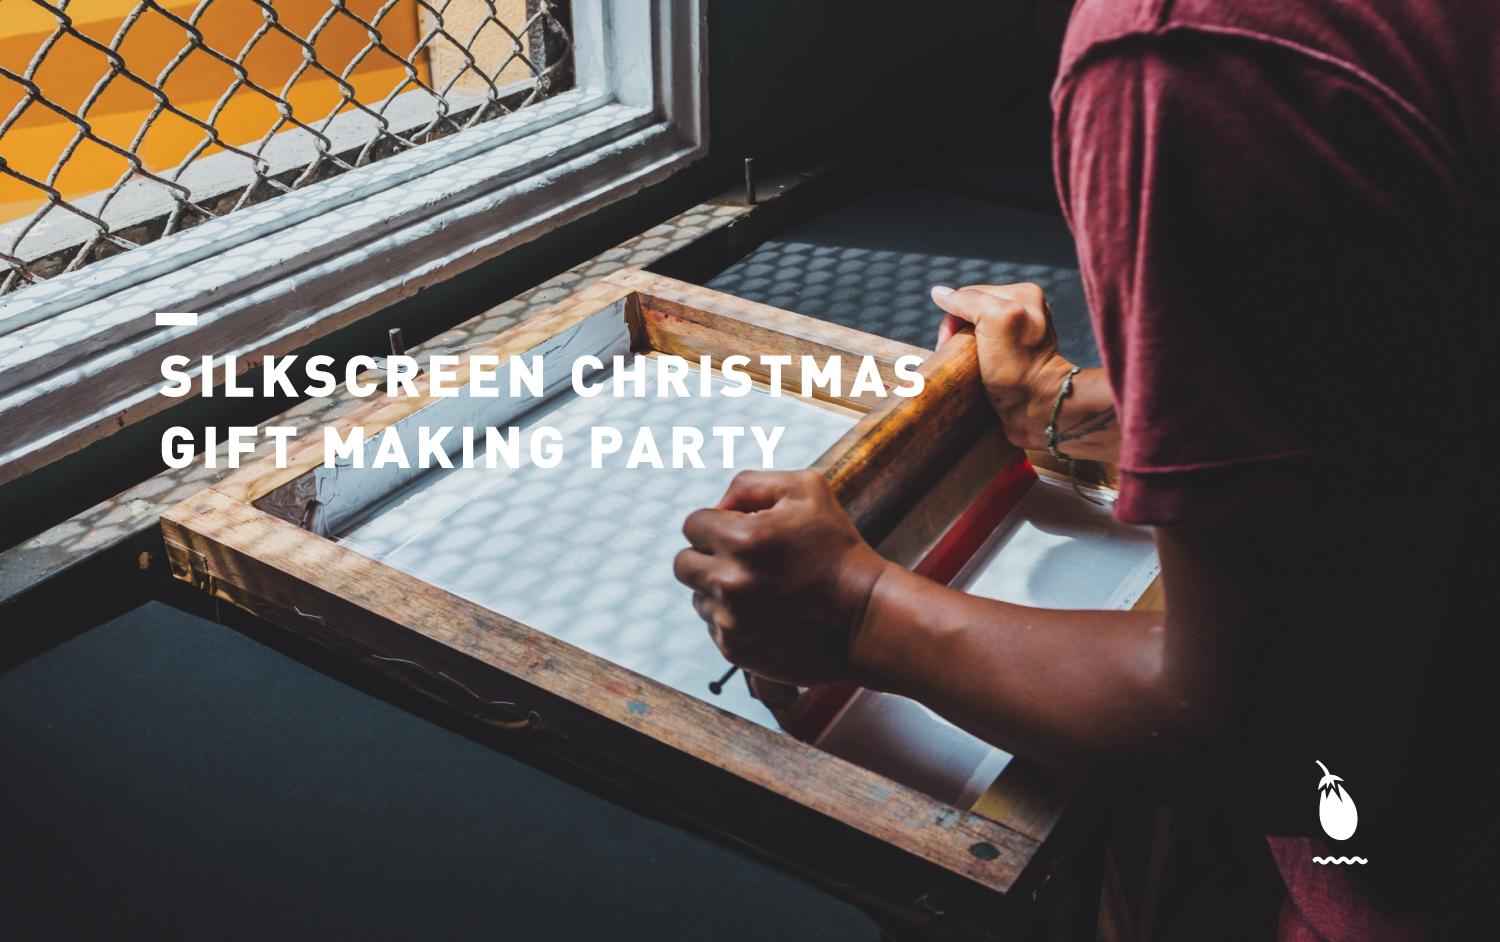 Silkscreen Christmas Gift Making Party (Source: Edible Garden City & WithAutumn)